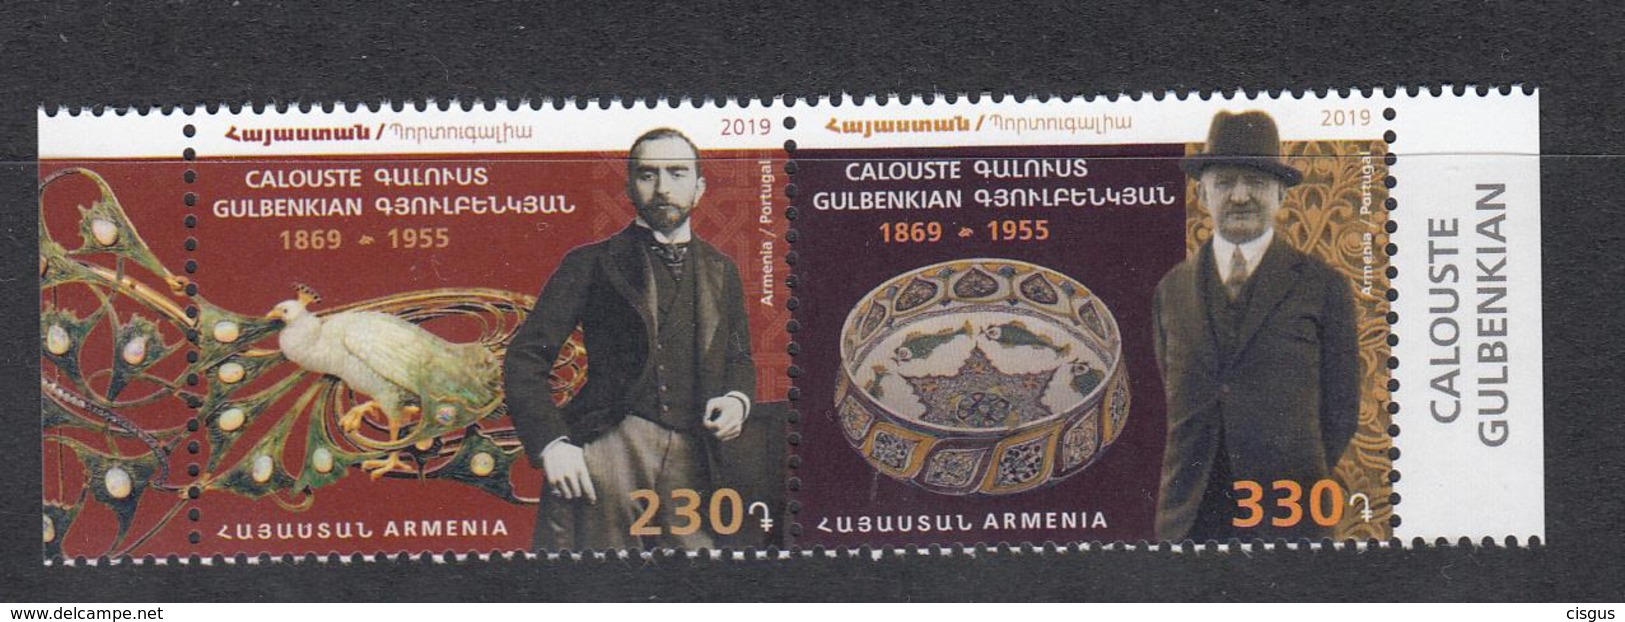 Armenia Armenien MNH** 2019 Joint Issue Portugal Mi 1110-1111 SALE - Armenien